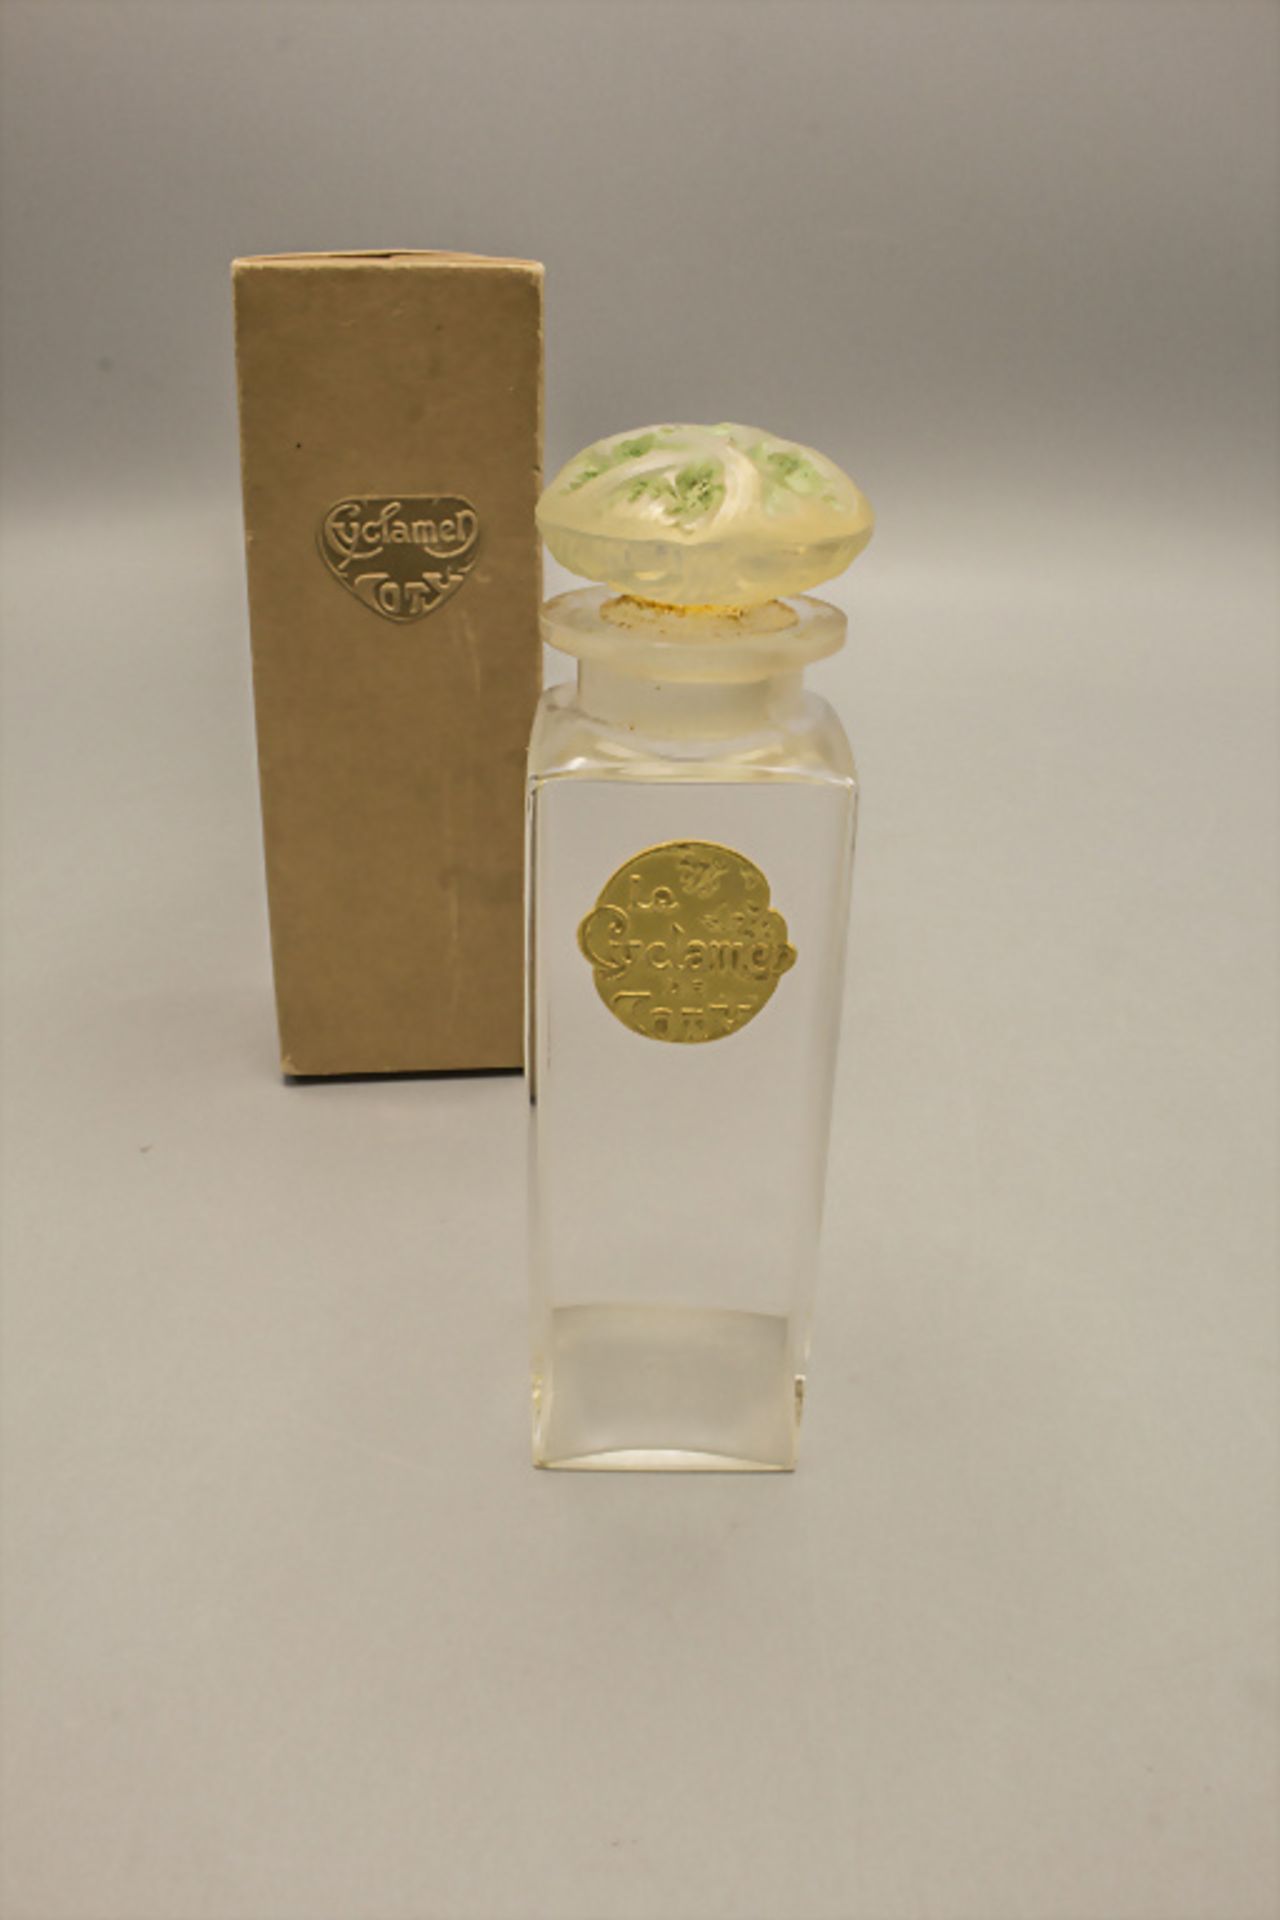 Parfümflakon CYCLAMEN, Coty / A perfume bottle CYCLAMEN, Coty, Paris, Entwurf Lalique, um 1900 - Image 2 of 4